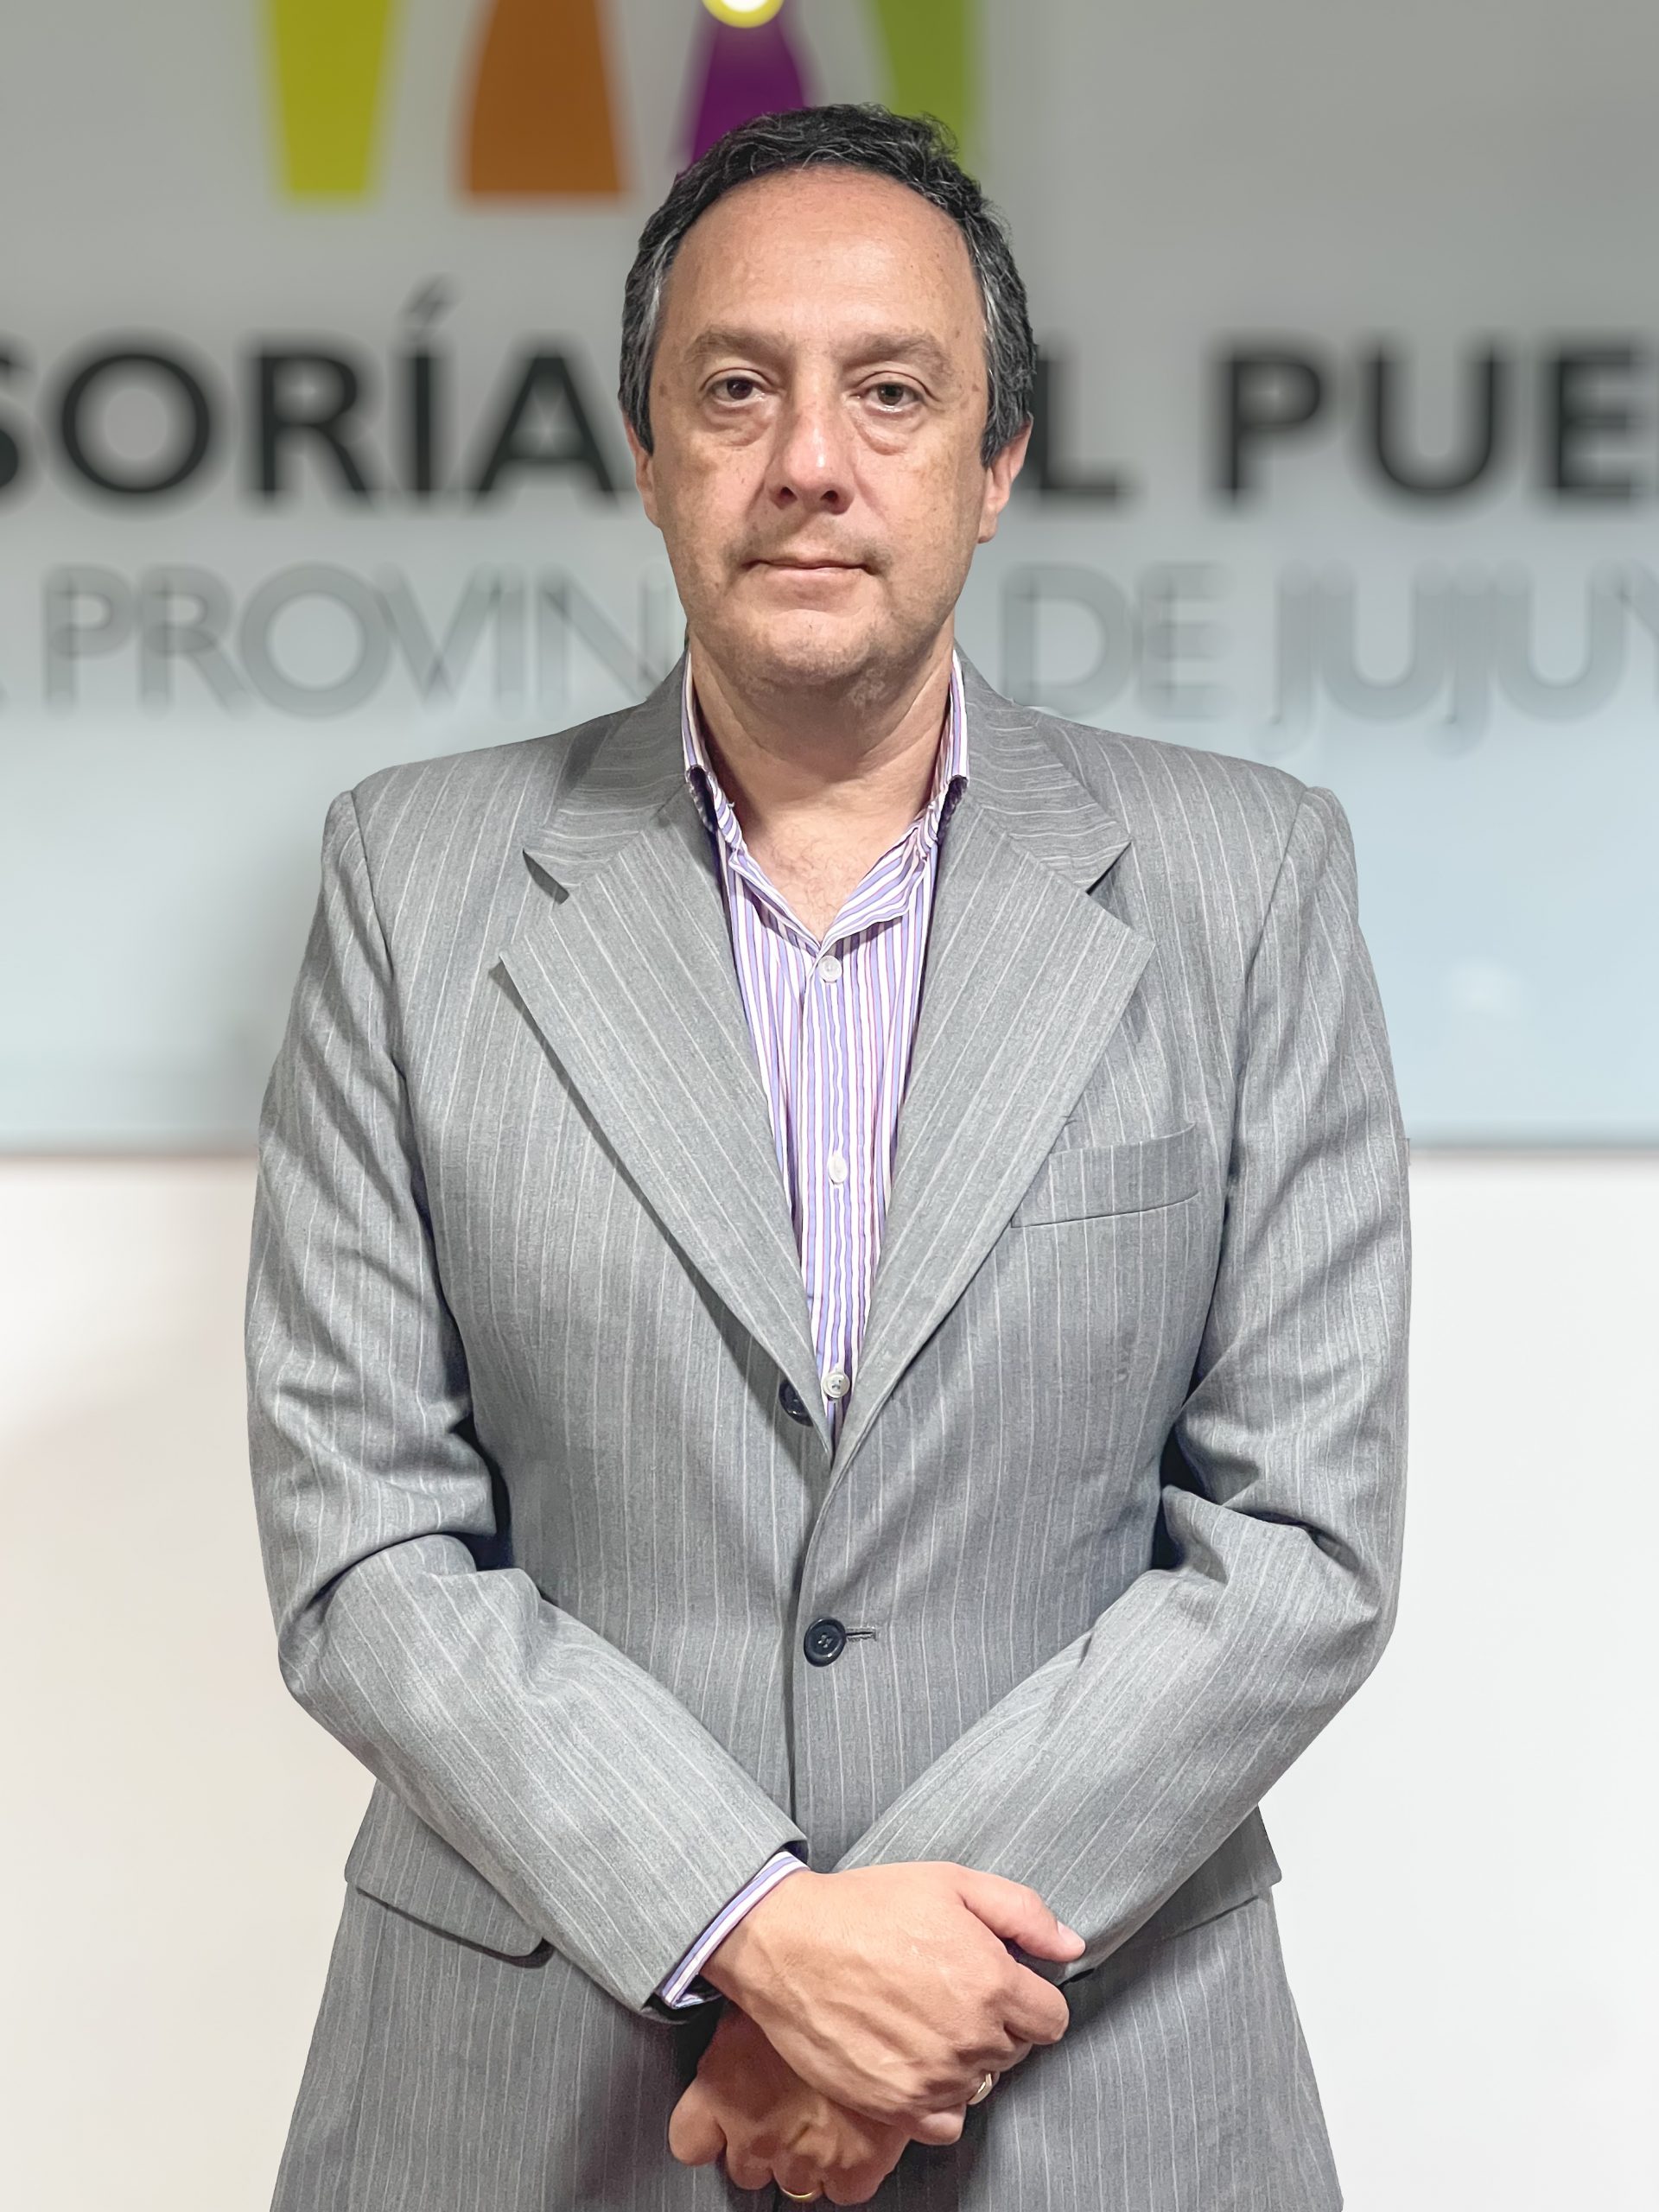 Pablo Luis La Villa